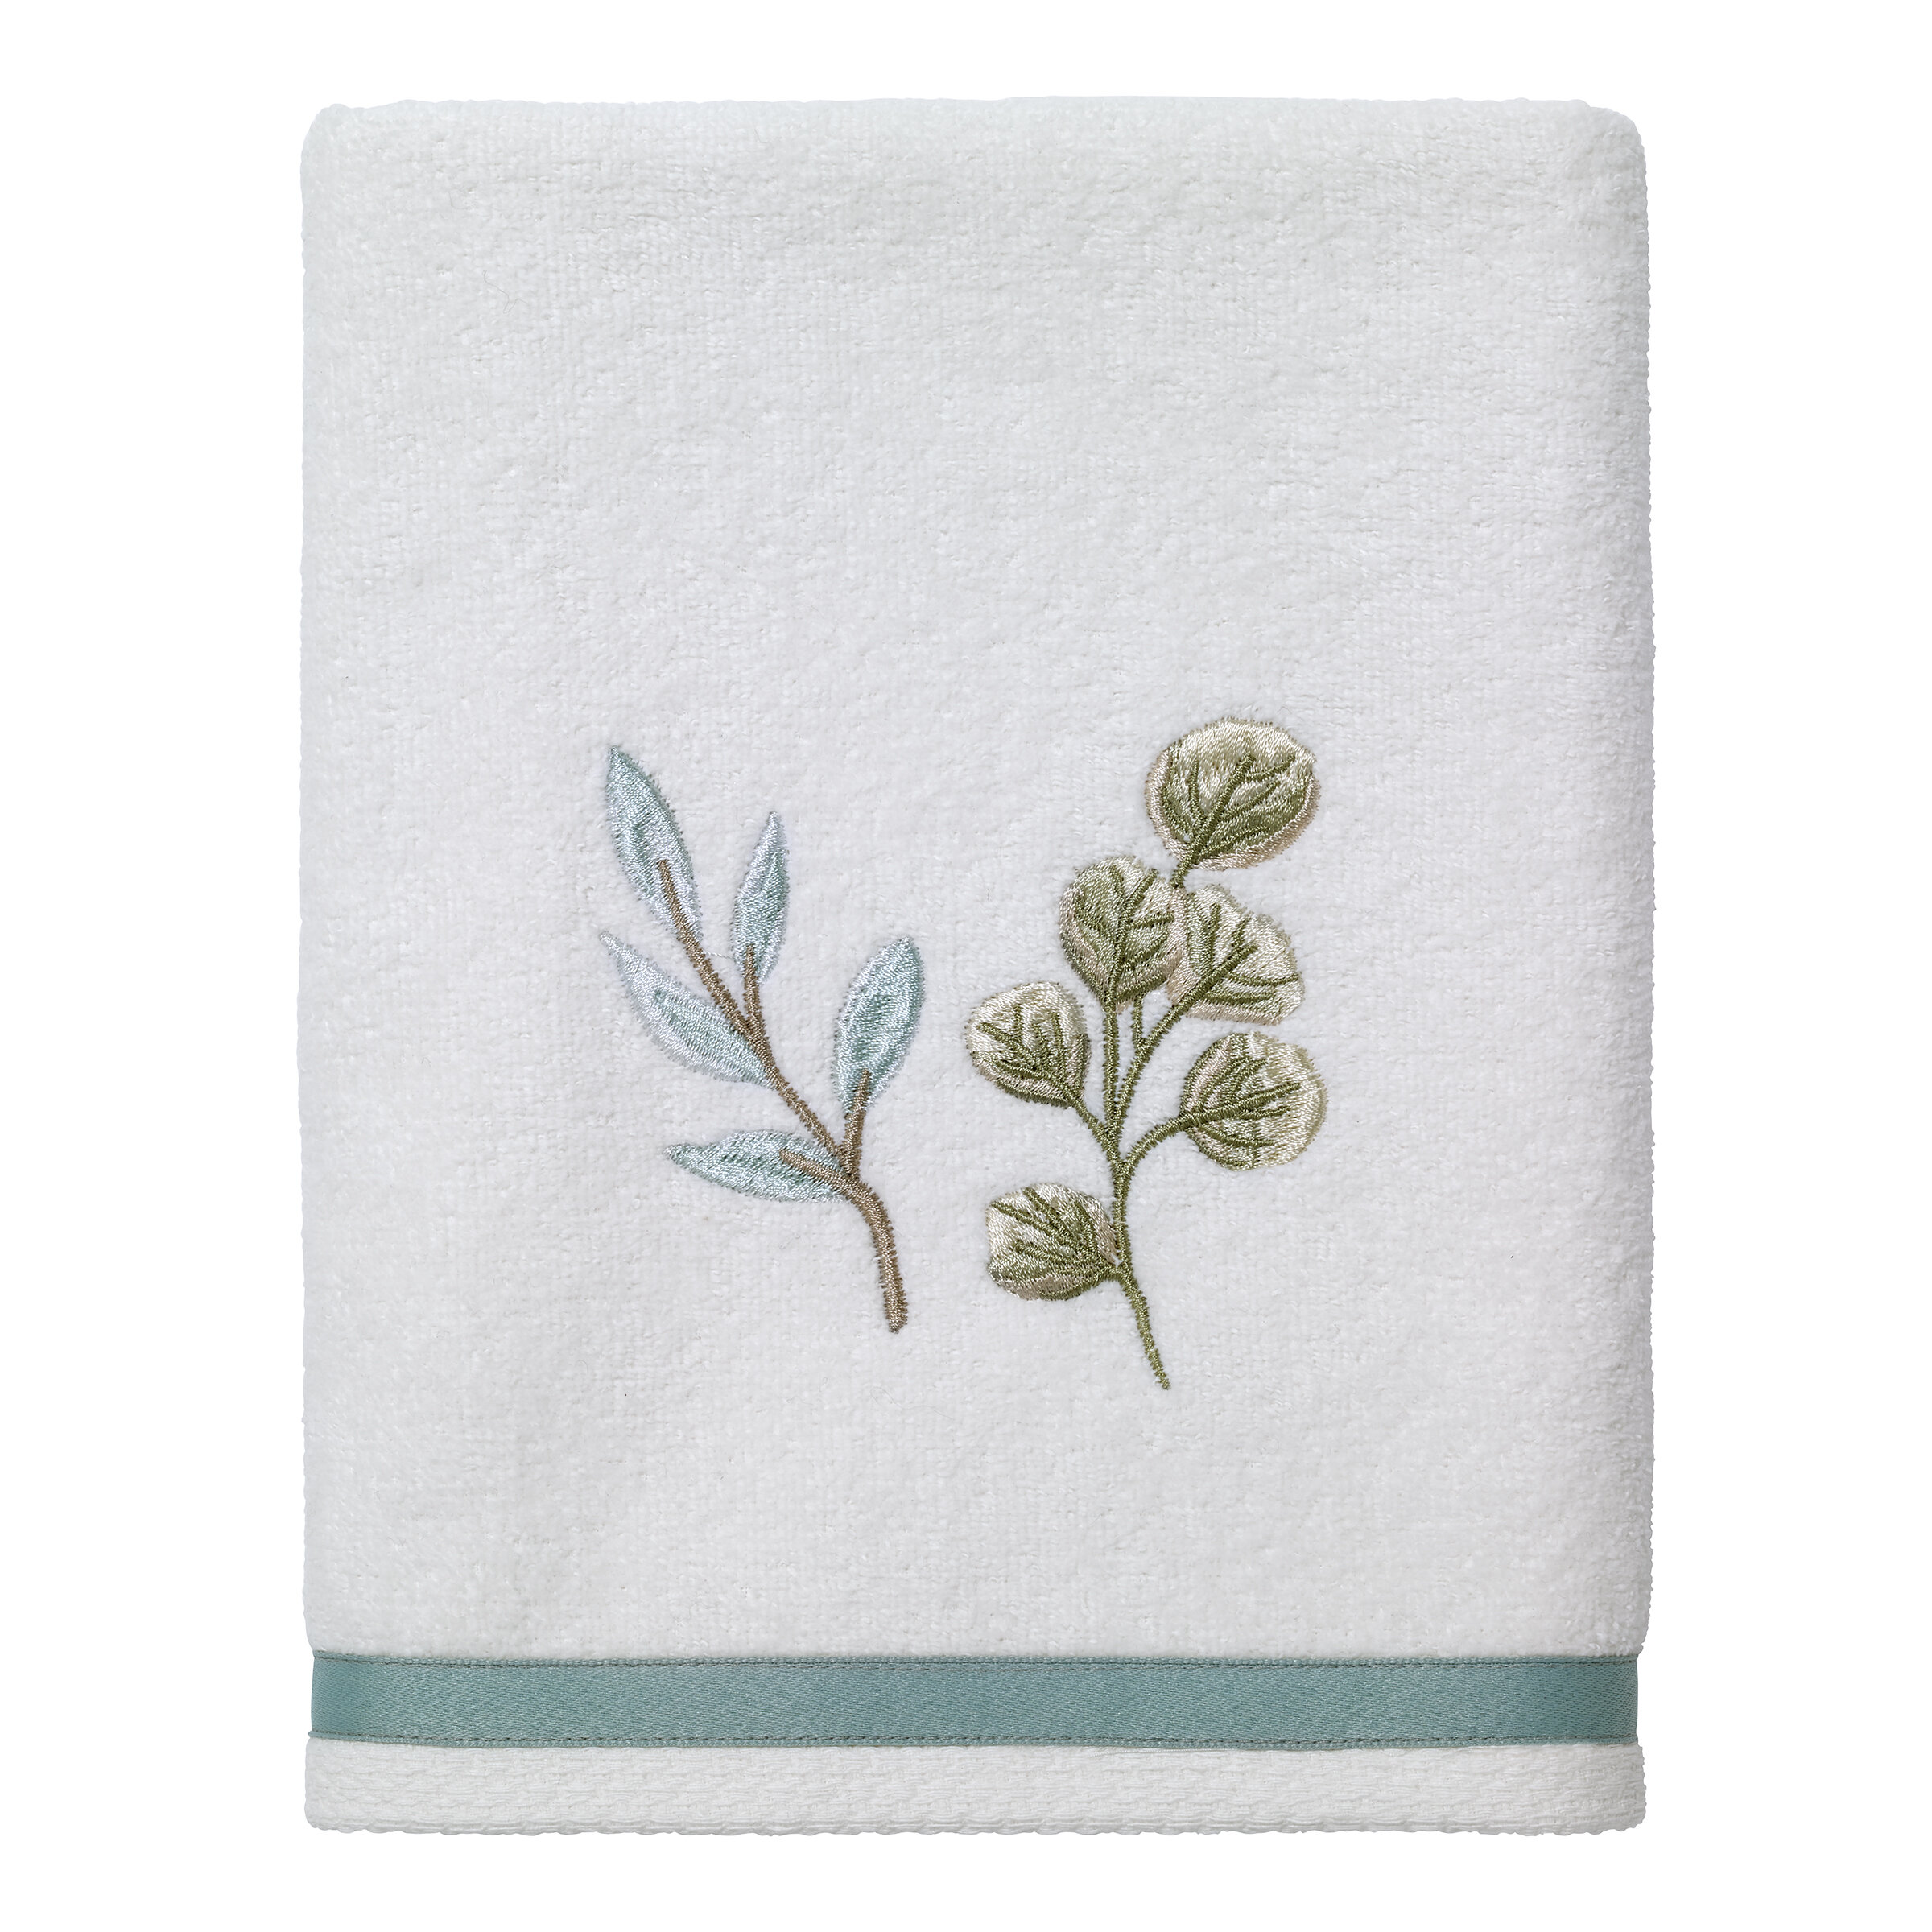 https://assets.wfcdn.com/im/28431255/compr-r85/1856/185661879/100-cotton-hand-towel.jpg